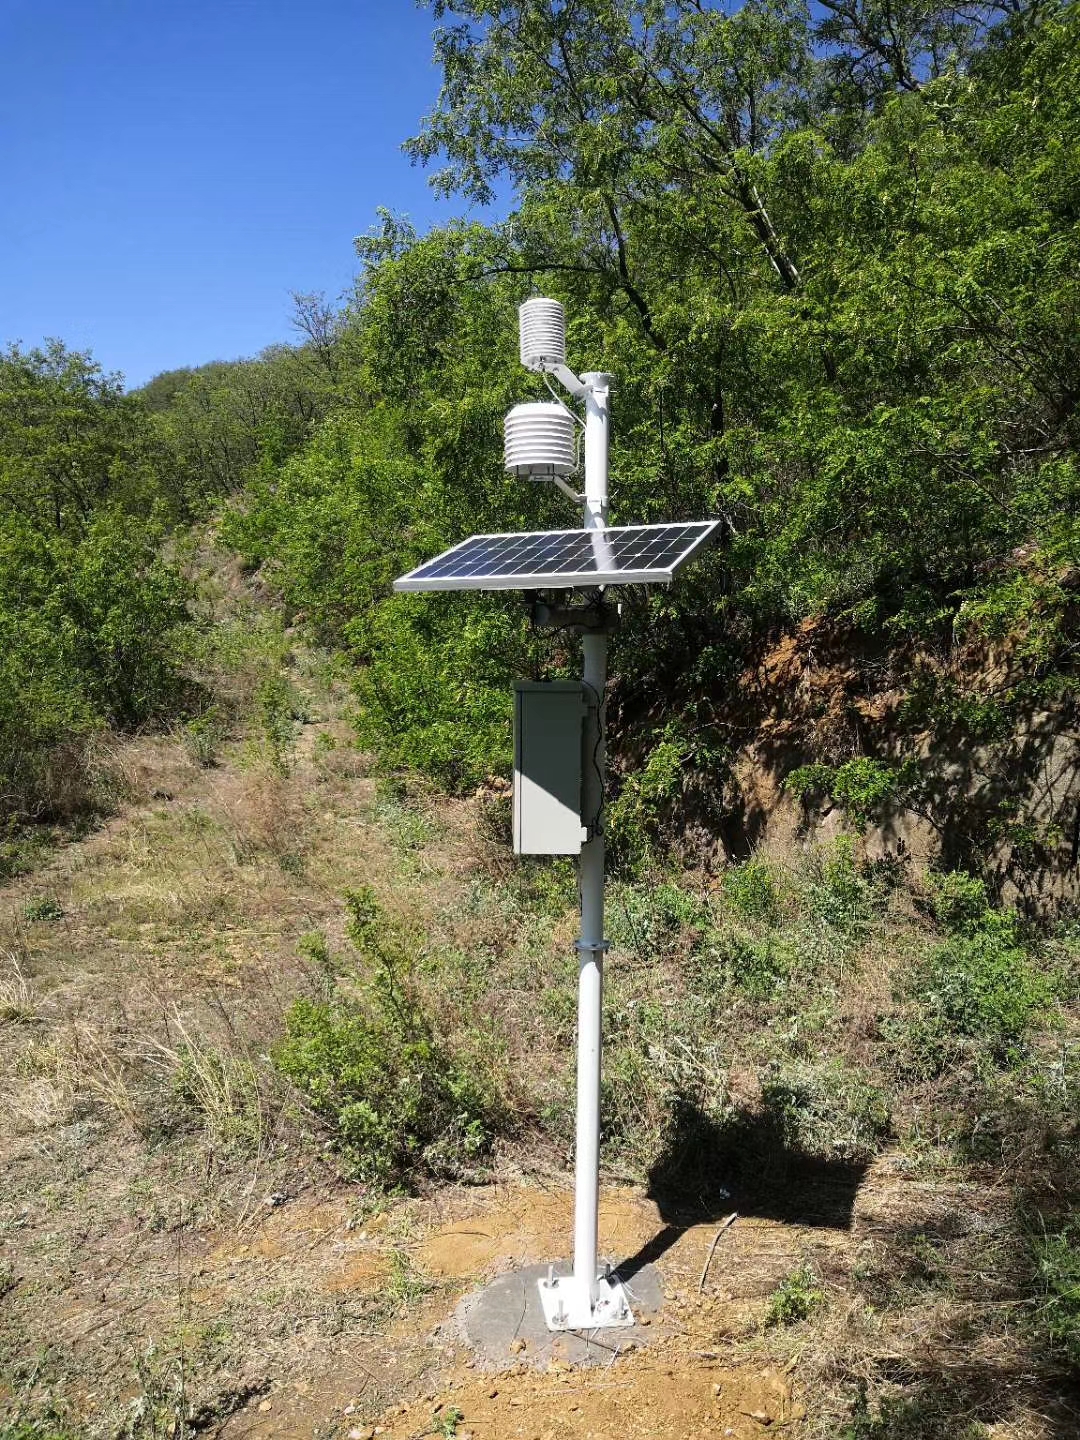 沙漠科研助手-小型气象监测站-风速风向气压雨量实时监测系统